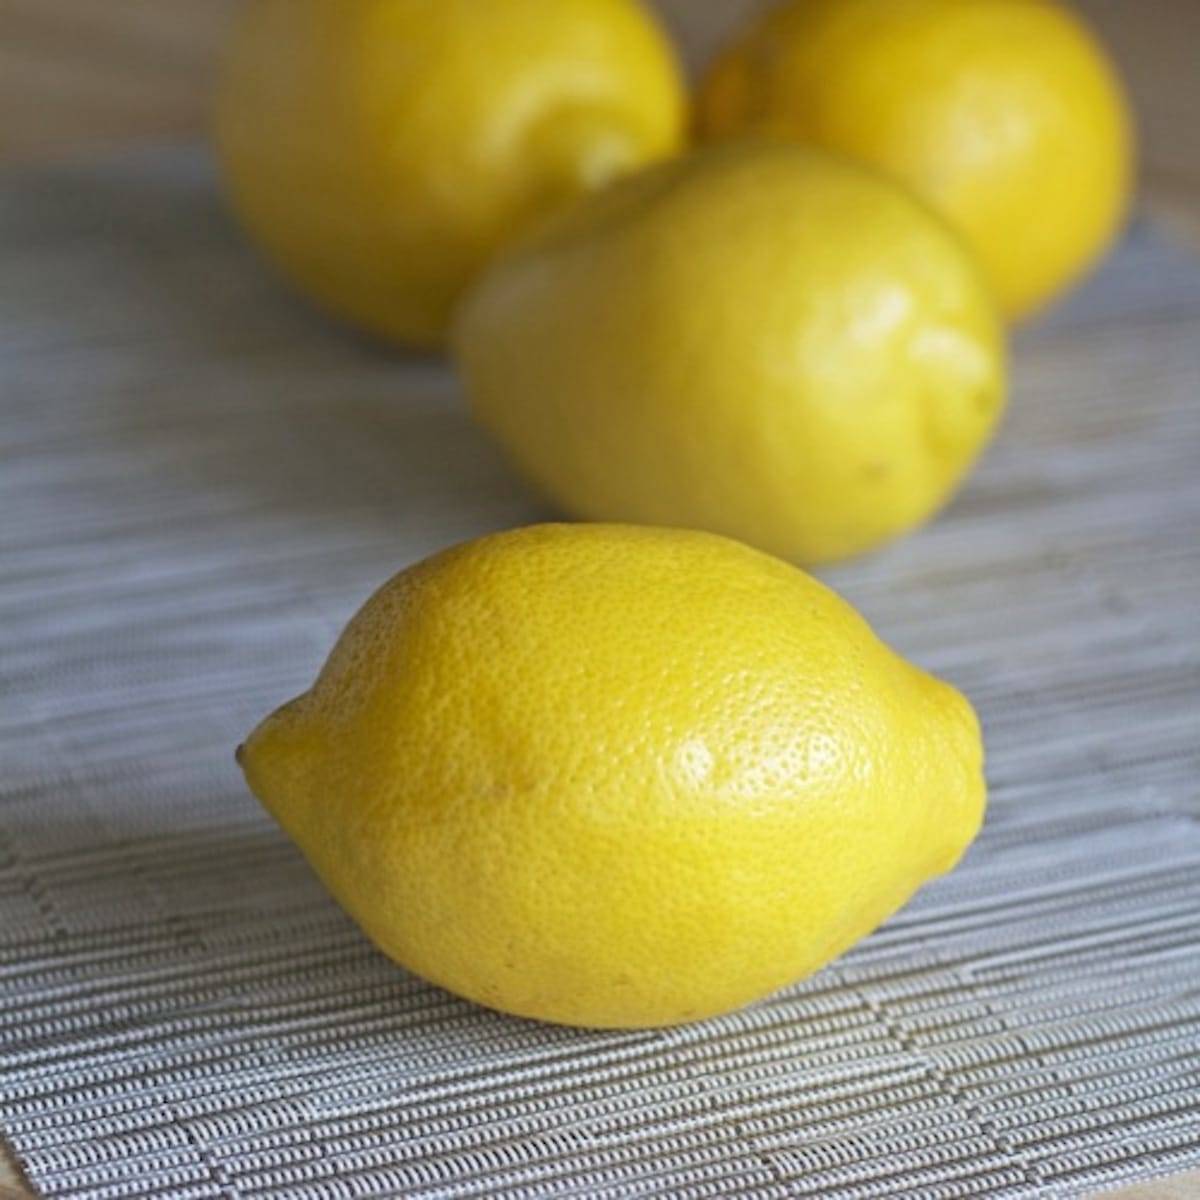 Lemons for lemonade.